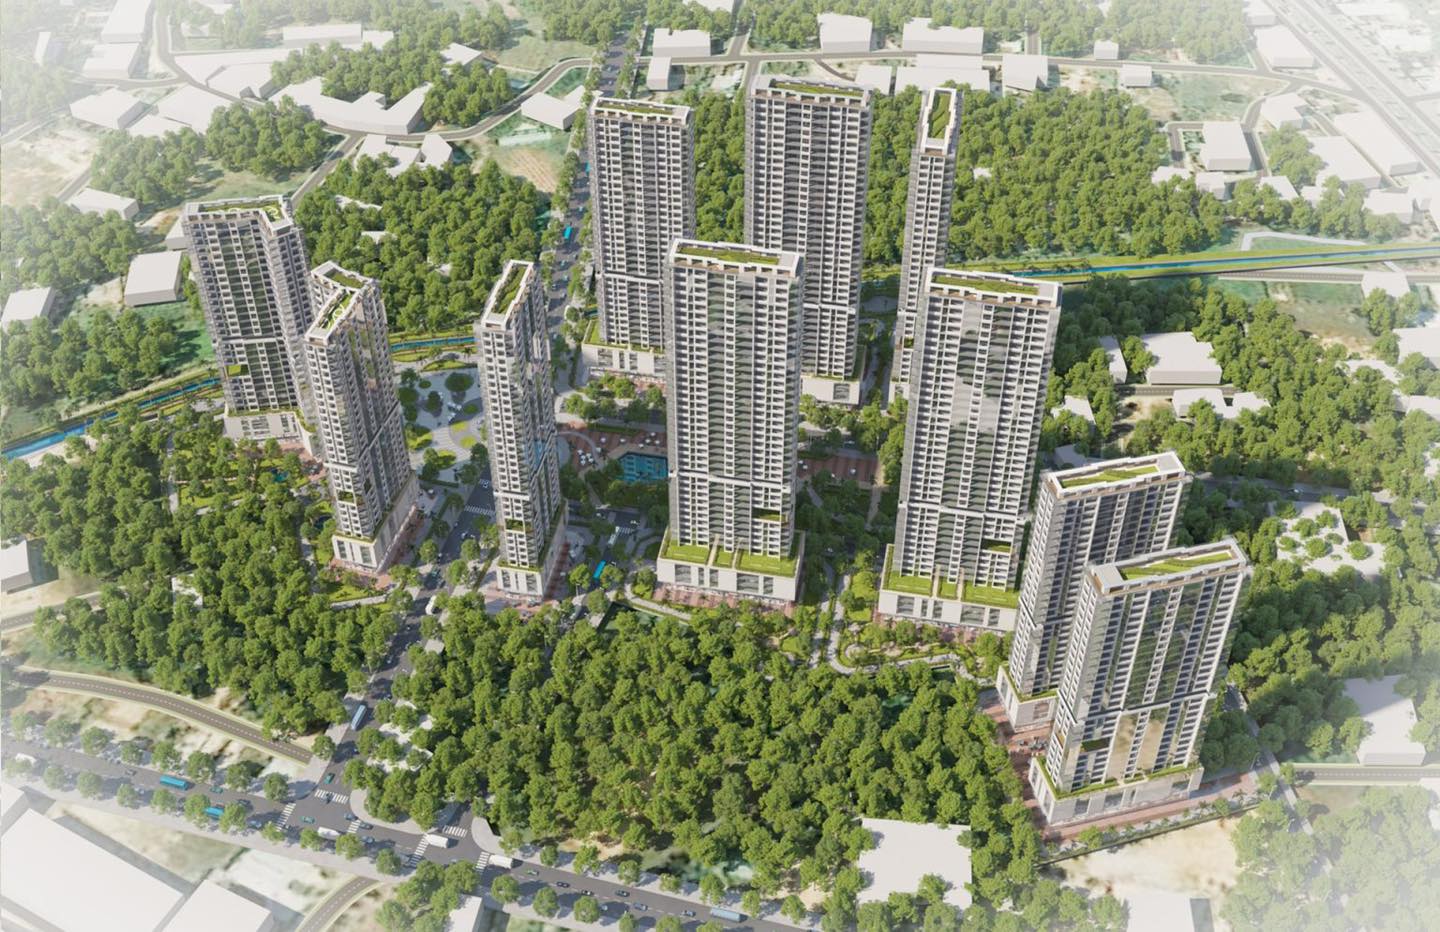 Được định hướng phát triển thành dự án chung cư cao cấp ngay trung tâm thành phố, nơi đây sẽ là một lựa chọn an cư không thể bỏ qua cho người dân.